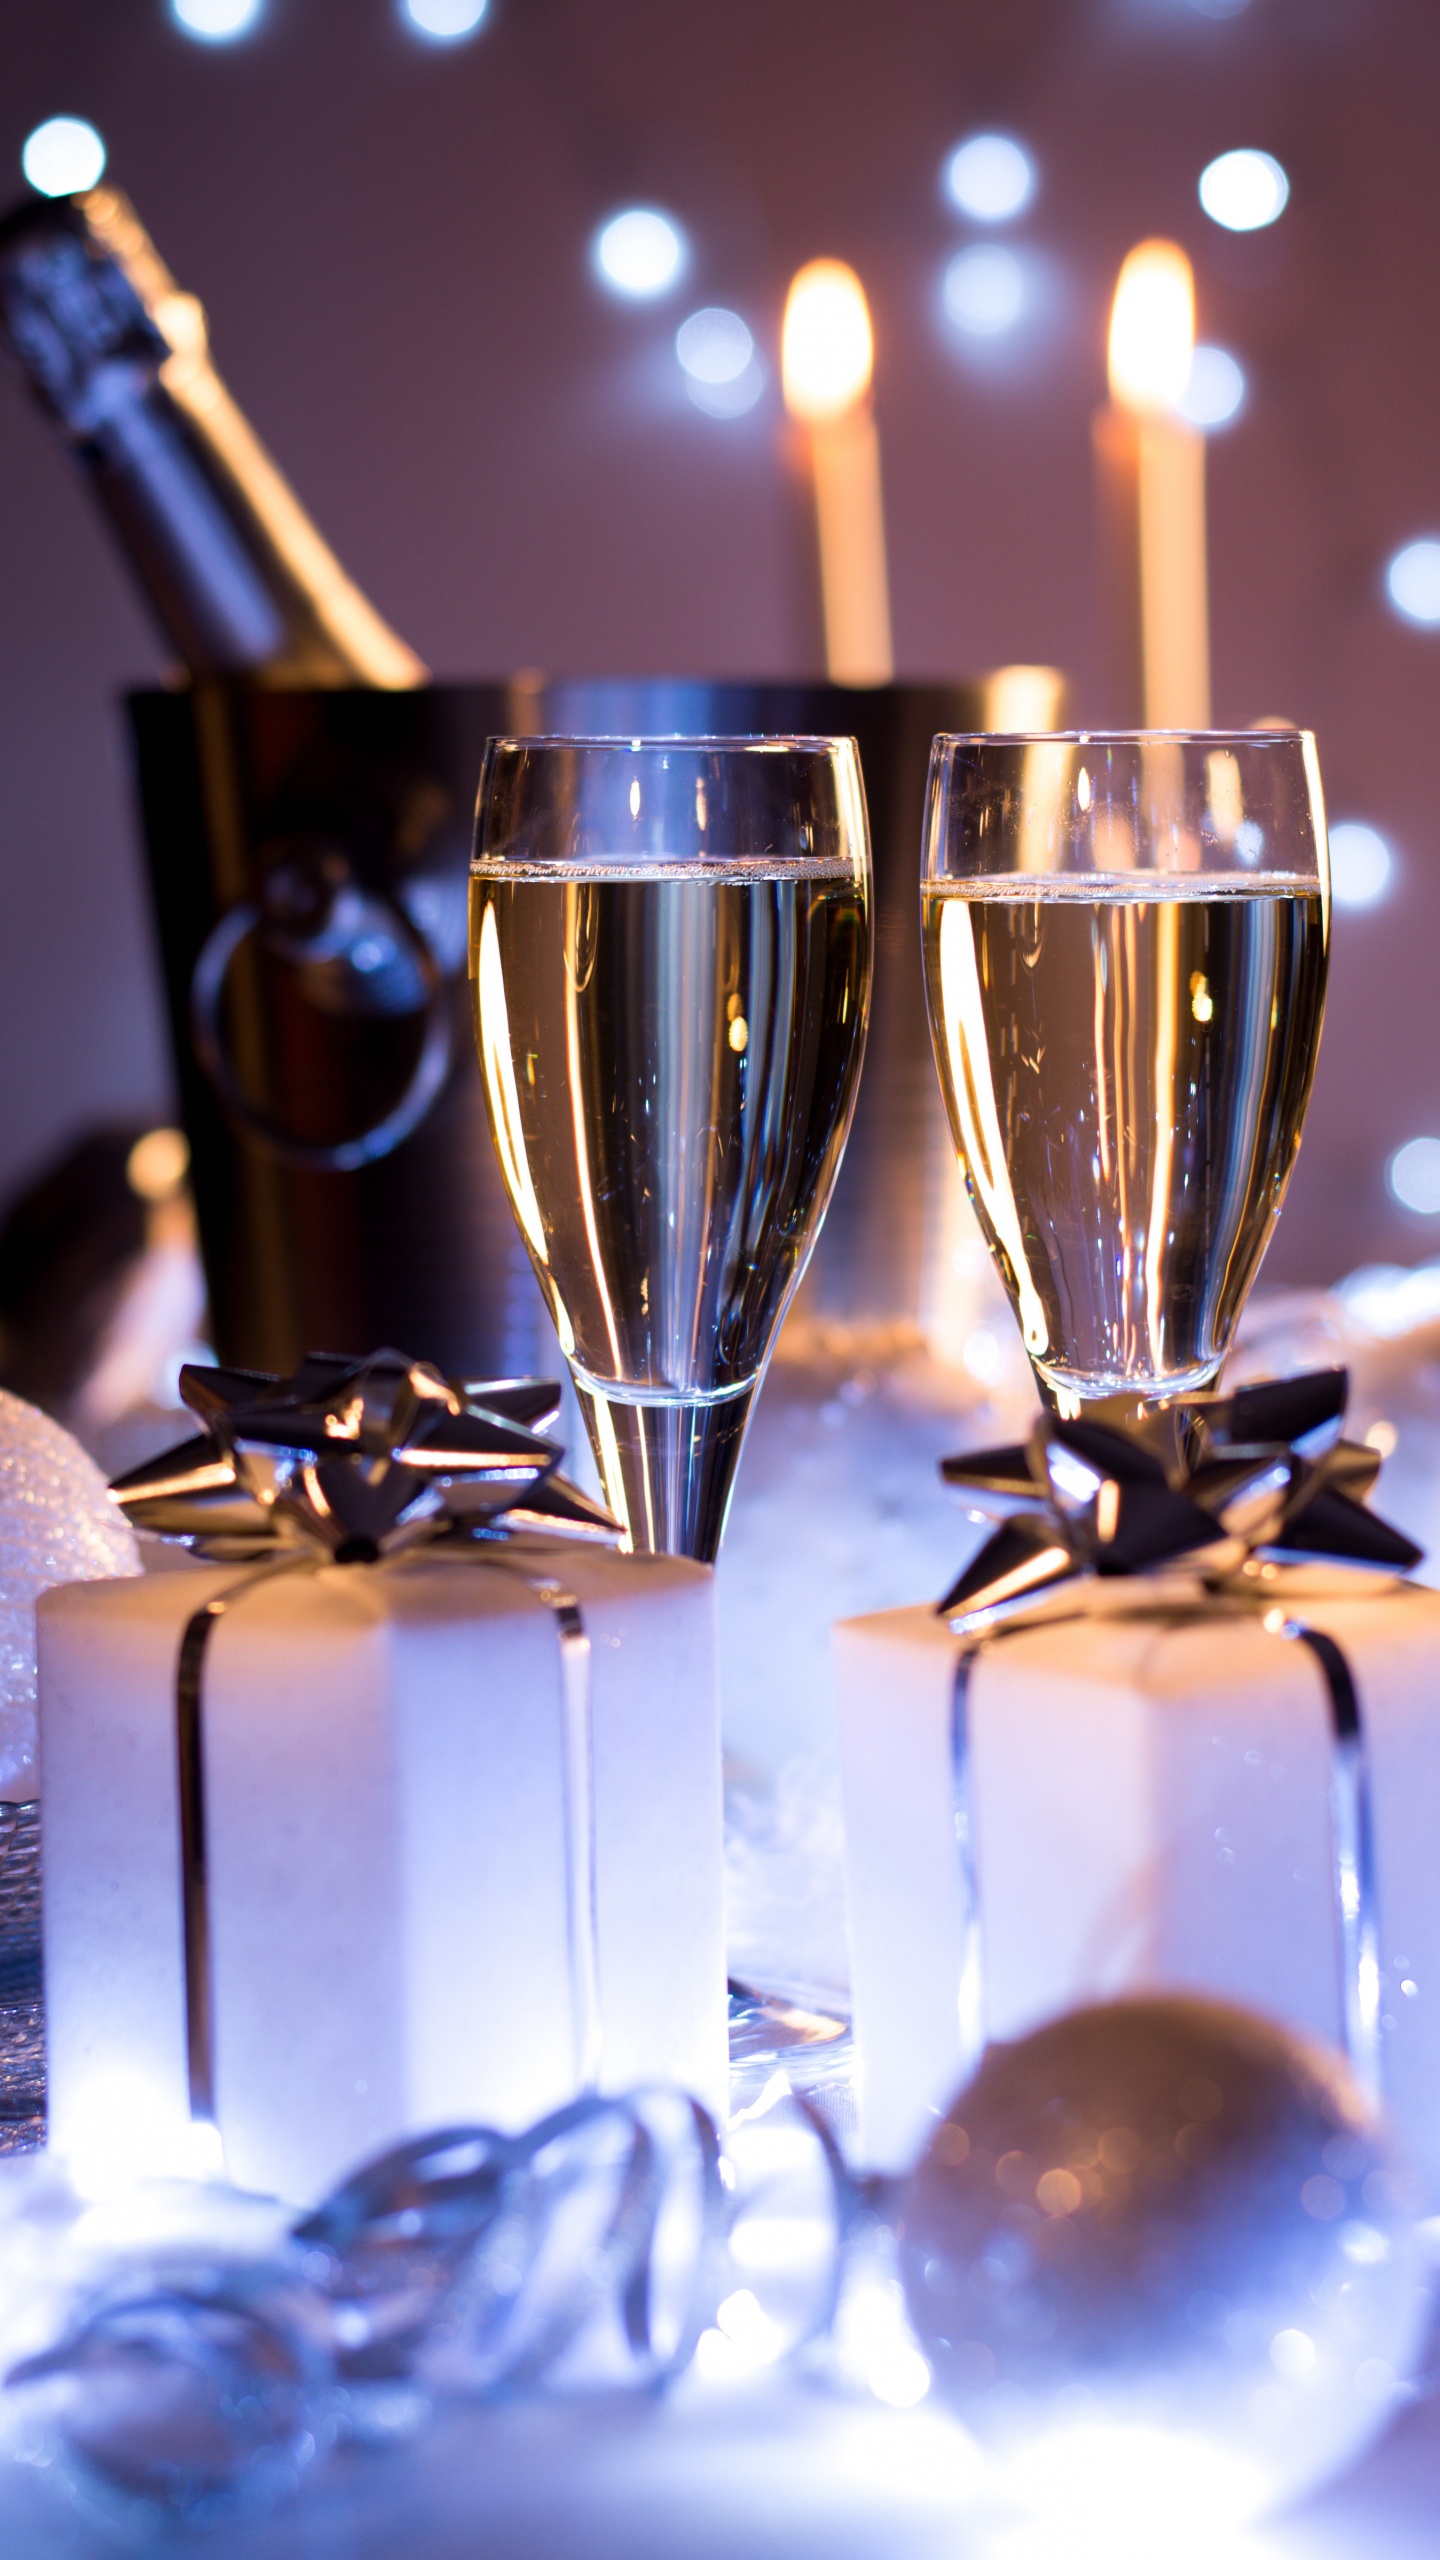 香槟, 葡萄酒, 新年前夕, 新的一年, 仍然生活 壁纸 1440x2560 允许